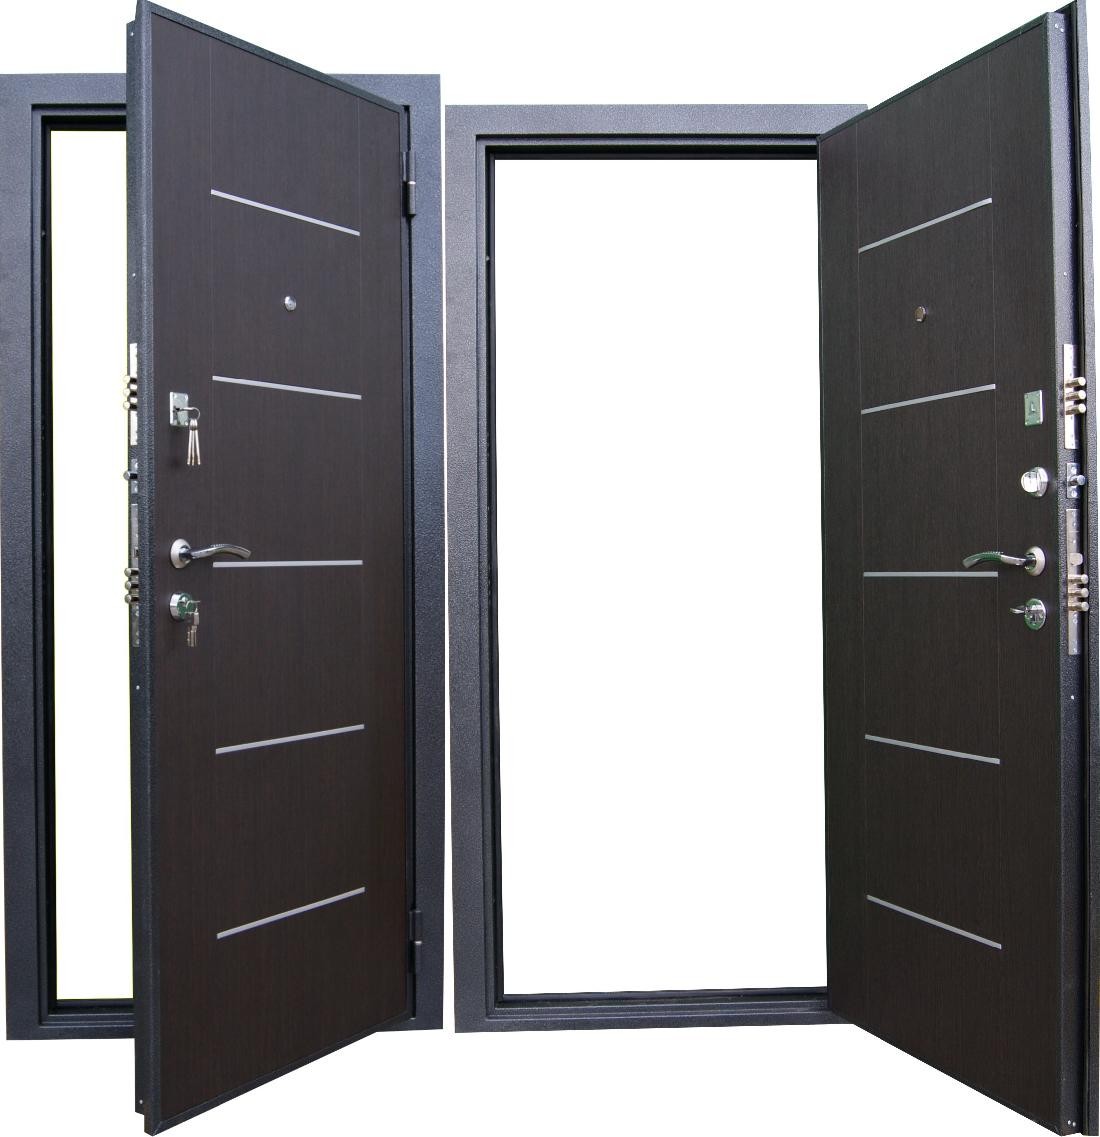 Дешевые железные двери. Дверь Кондор горизонталь. Входная дверь Бастион 3d (3д). Дверь стальная 2дсу 2.02.1. Дверь входная модель Hass-70 железная.